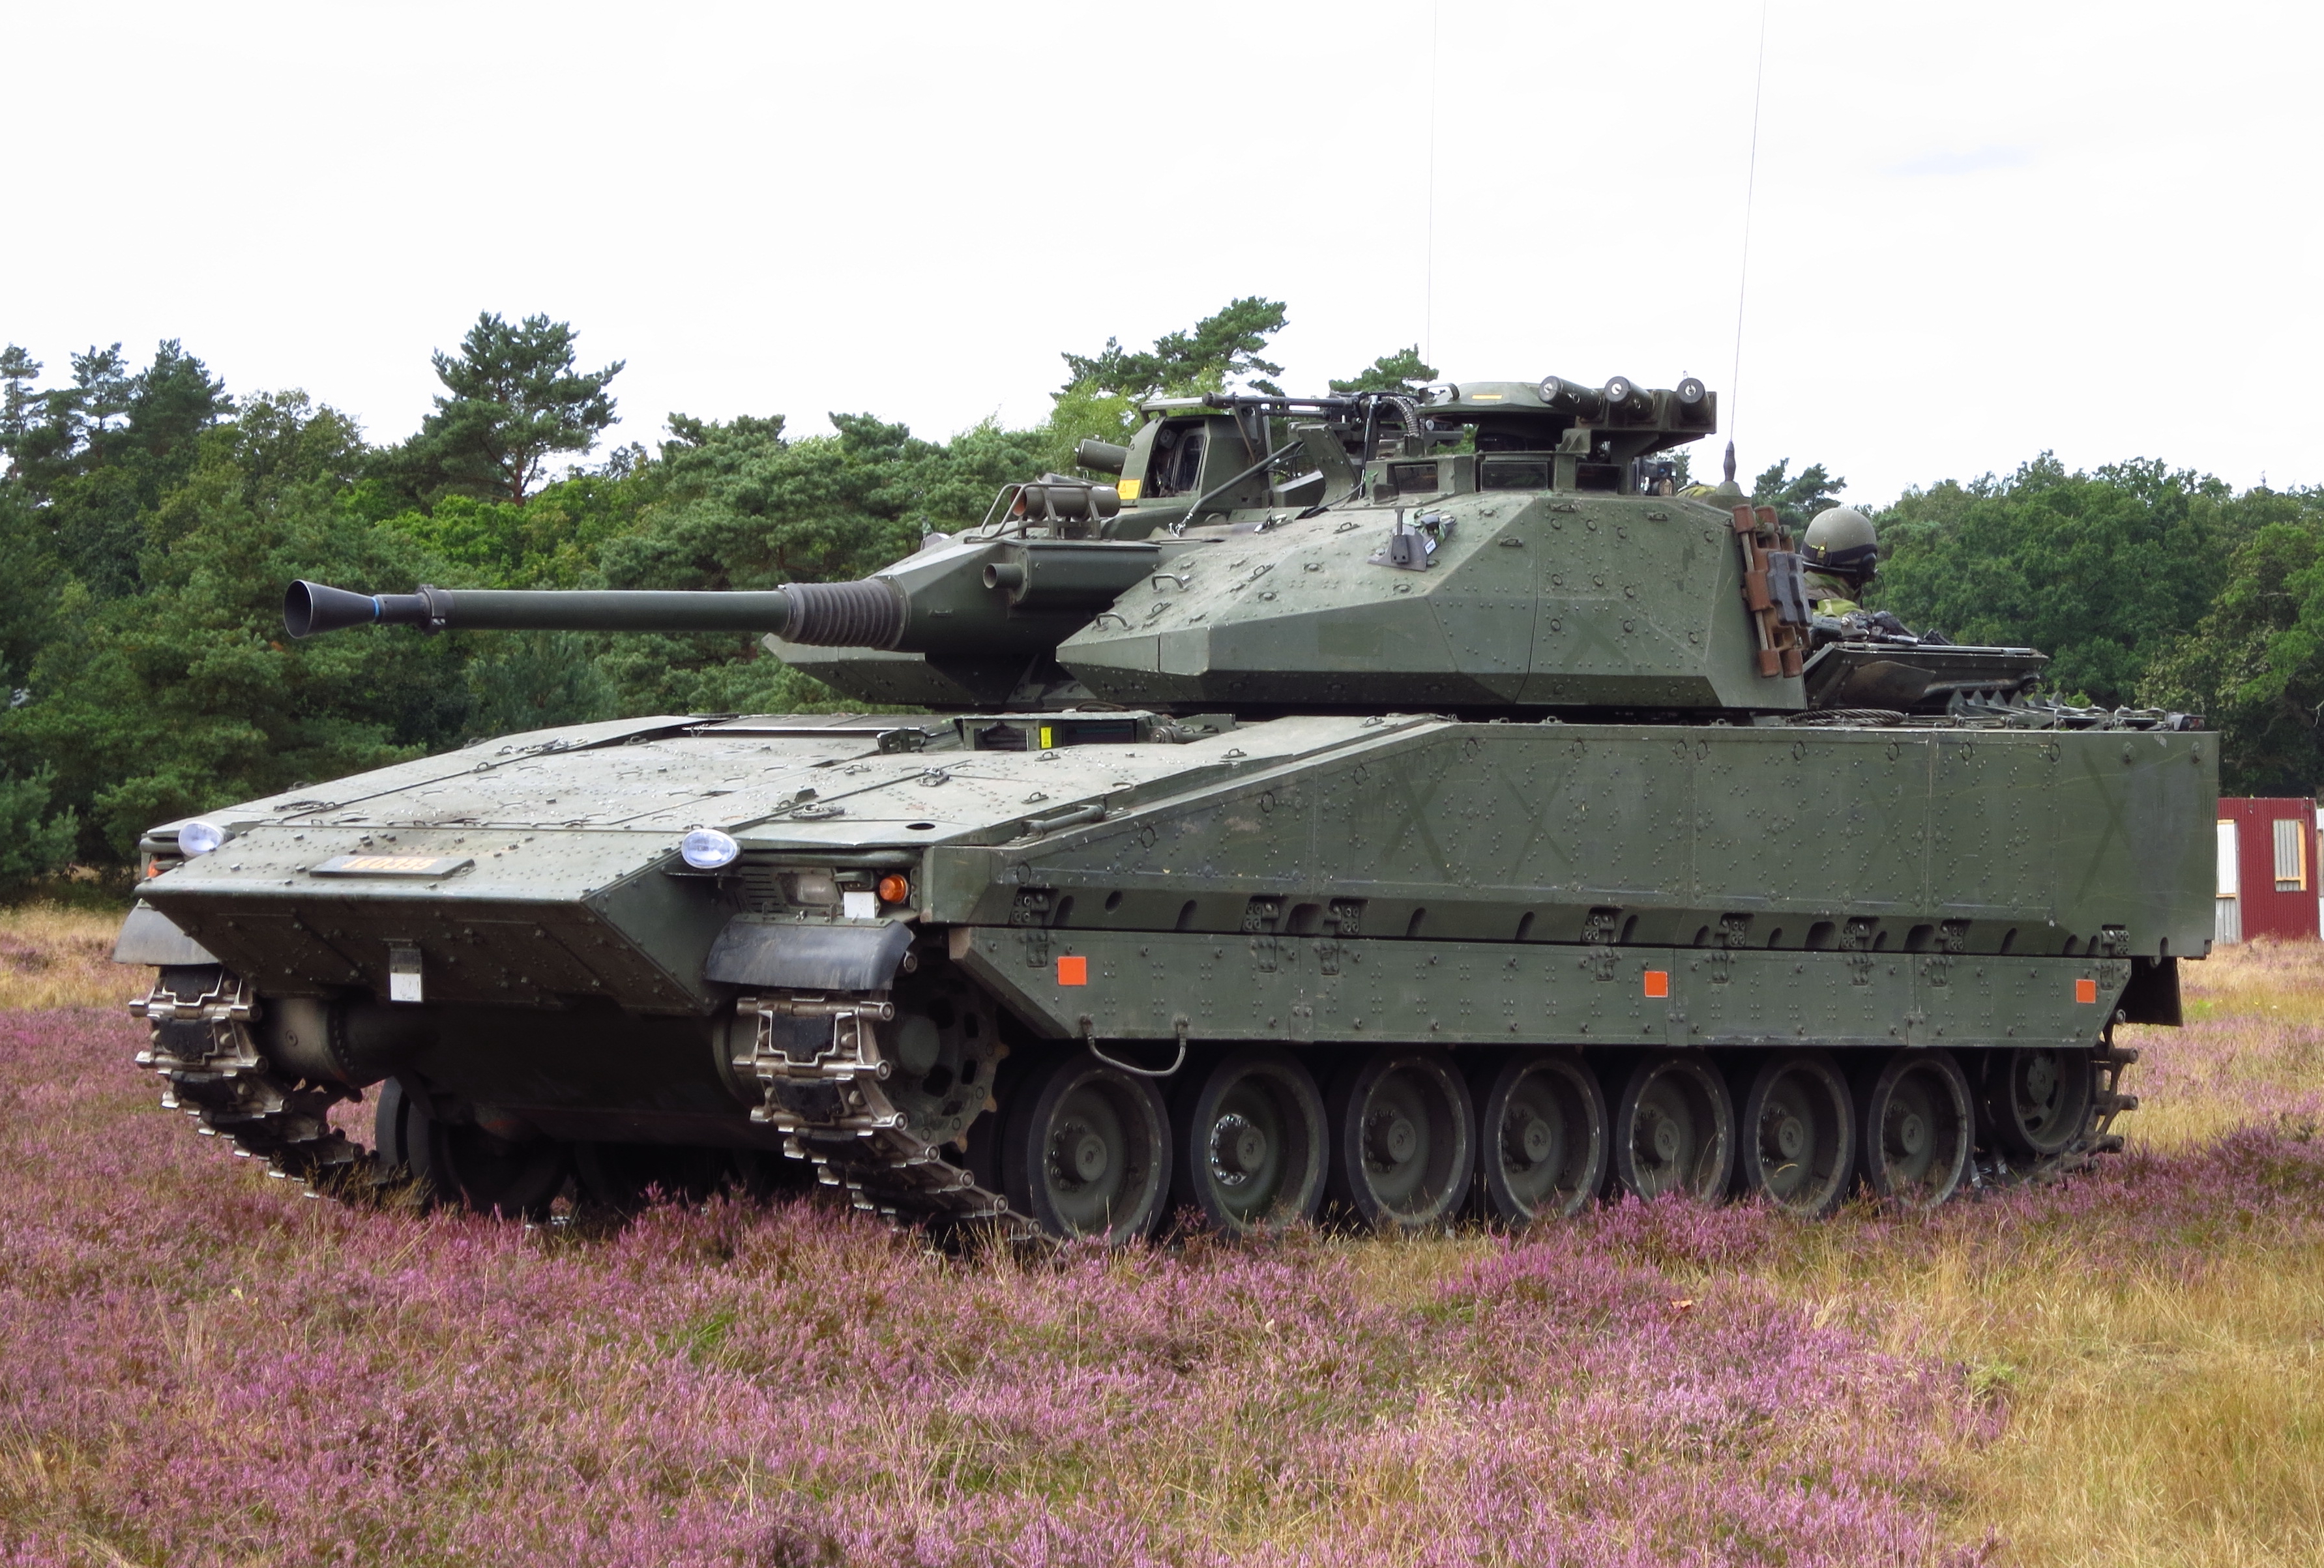 Zweedse Stridsfordon 90 BMP's arriveren in Oekraïne - Reznikov